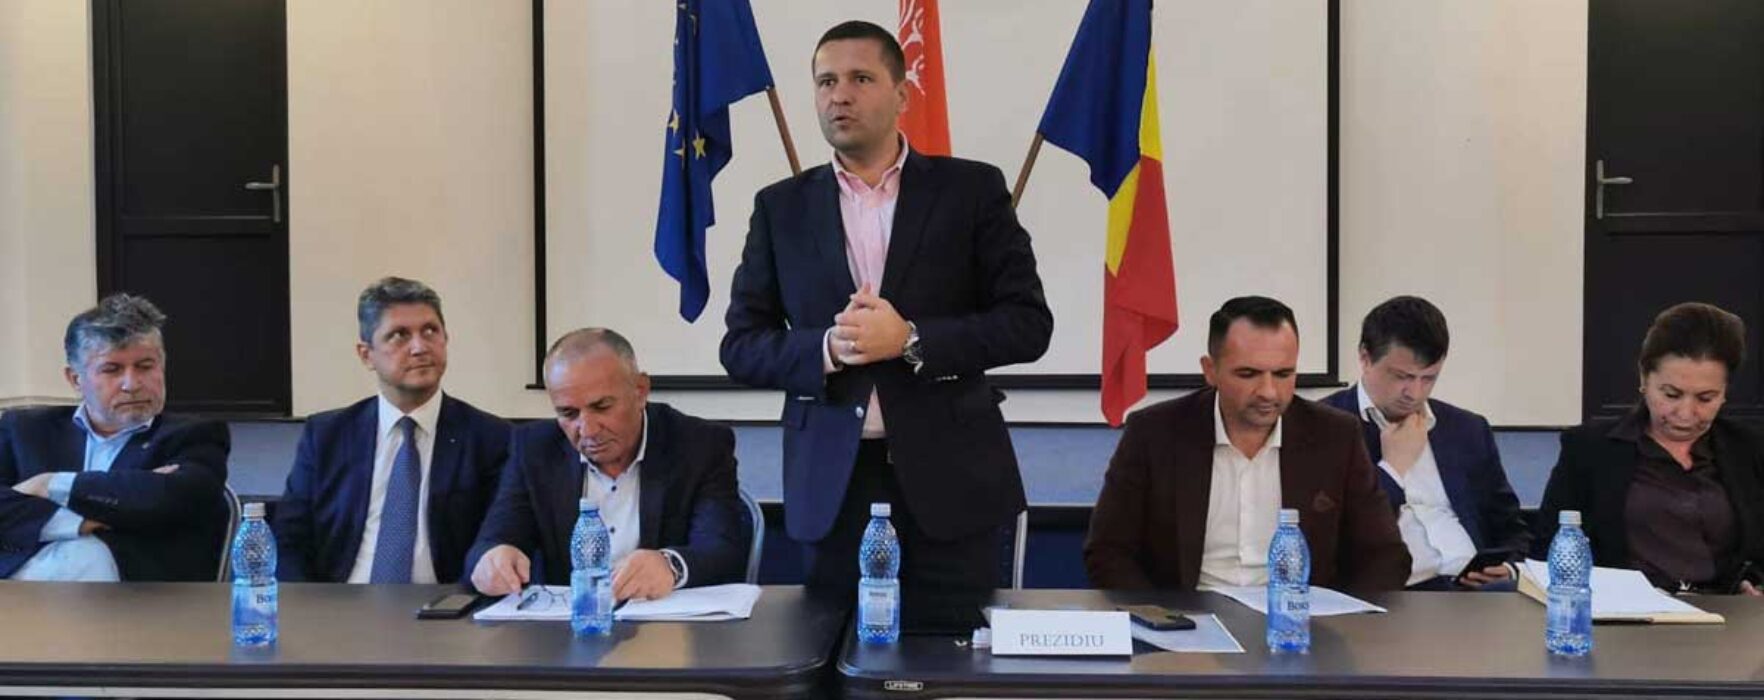 PSD Dâmboviţa: Analizăm și performanța în administrația locală a membrilor PSD